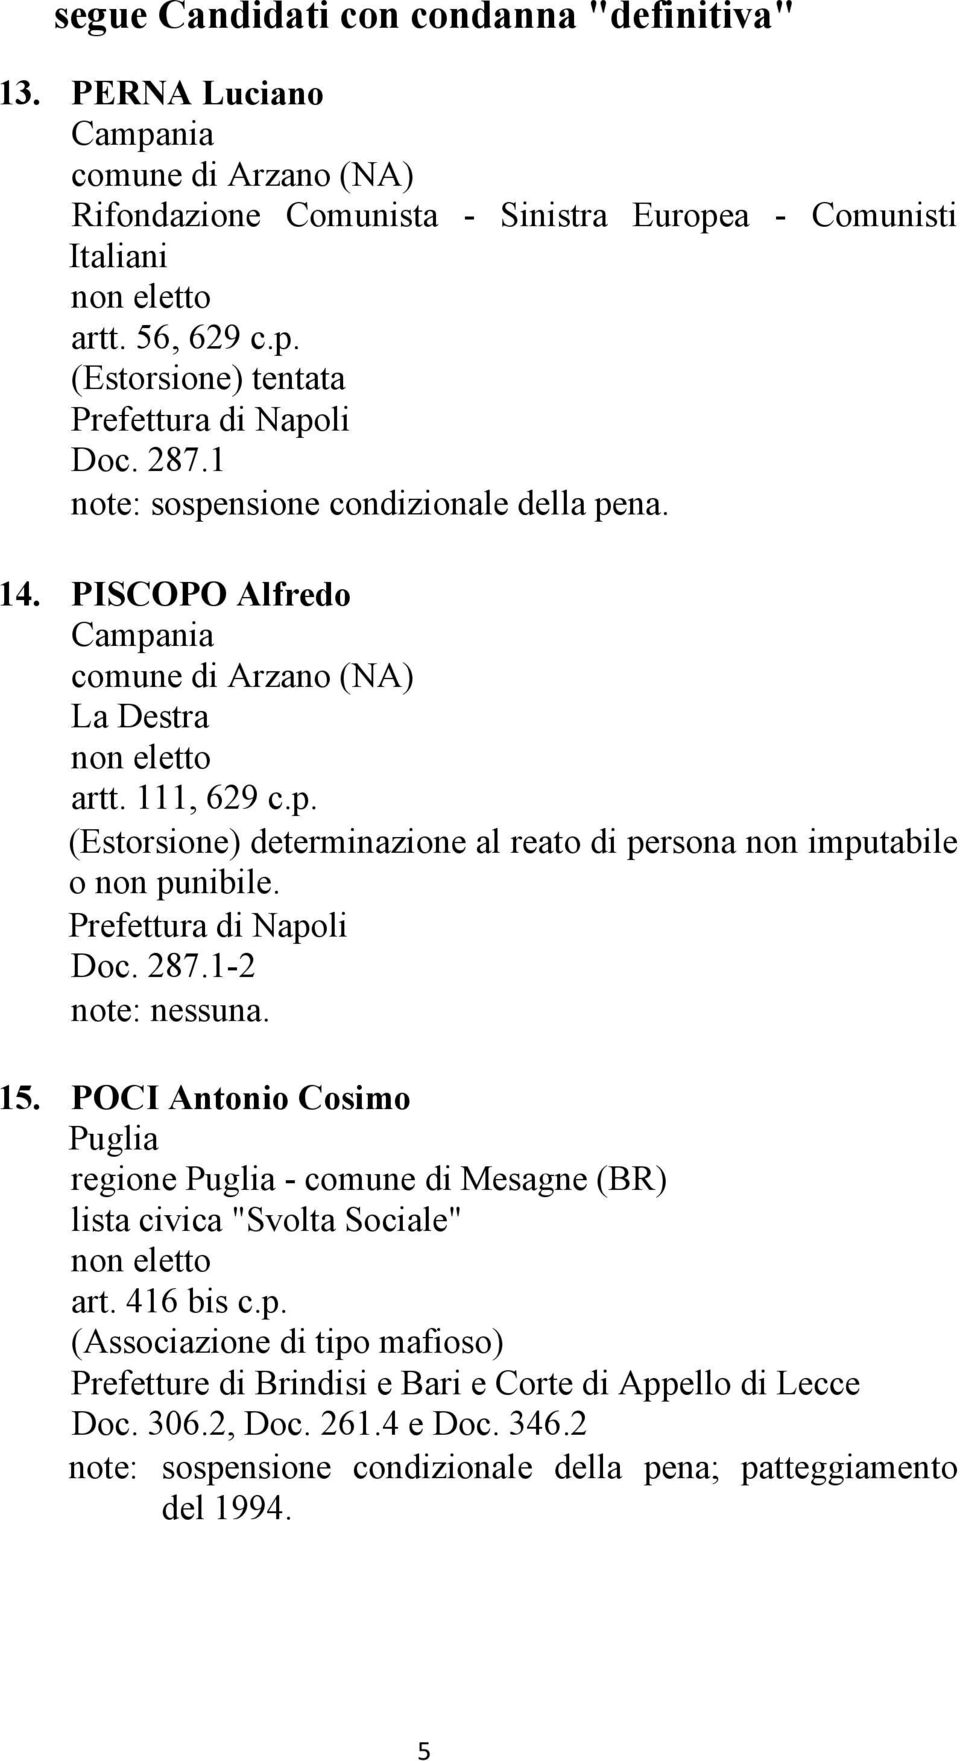 Doc. 287.1-2 15. POCI Antonio Cosimo regione - comune di Mesagne (BR) lista civica "Svolta Sociale" art. 416 bis c.p.